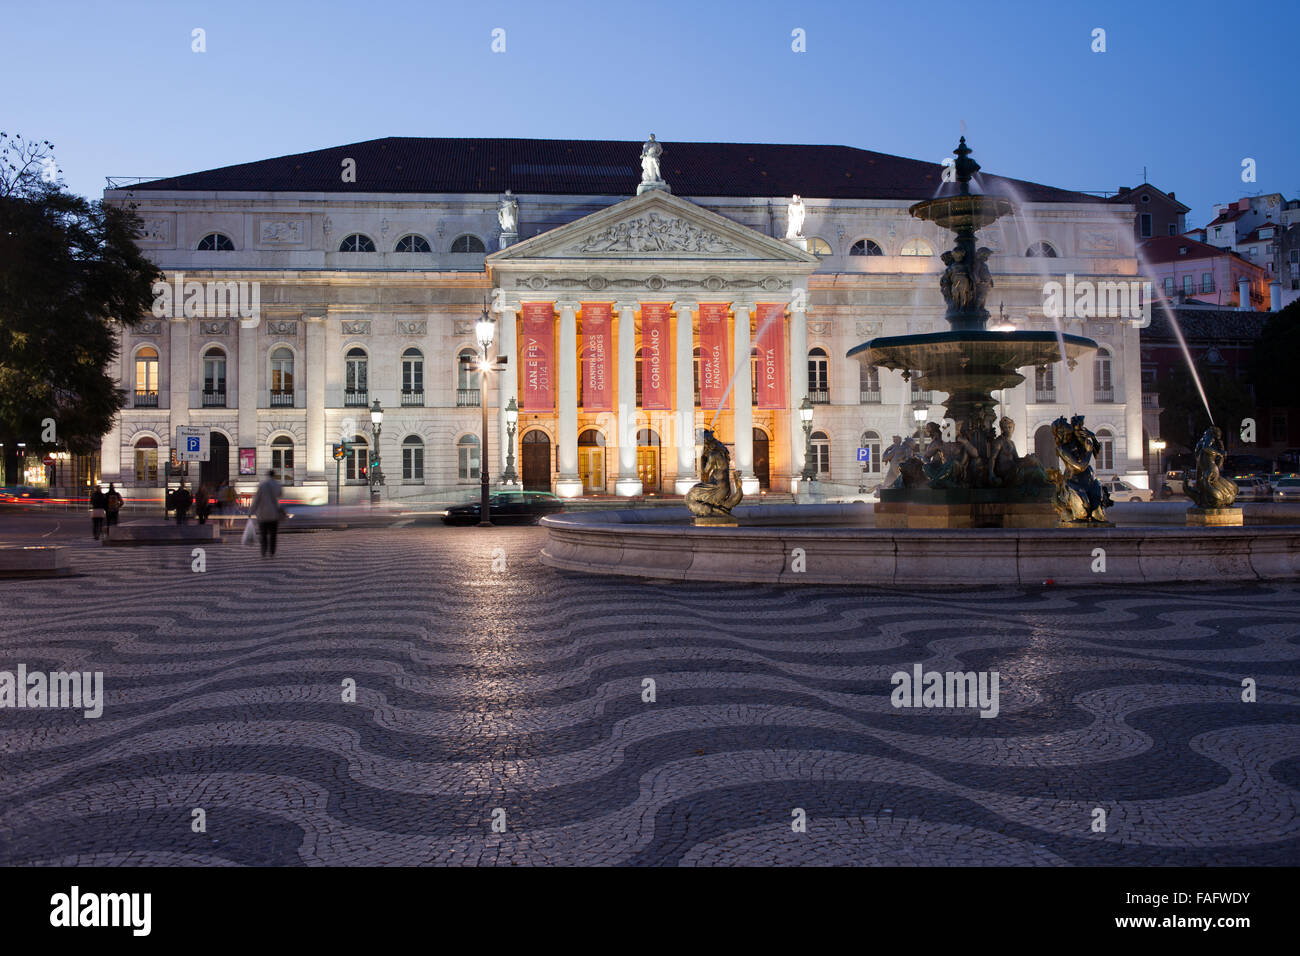 Portugal, Lisbonne, centre-ville, le Théâtre National Dona Maria II et fontaine baroque sur la place Rossio de nuit Banque D'Images